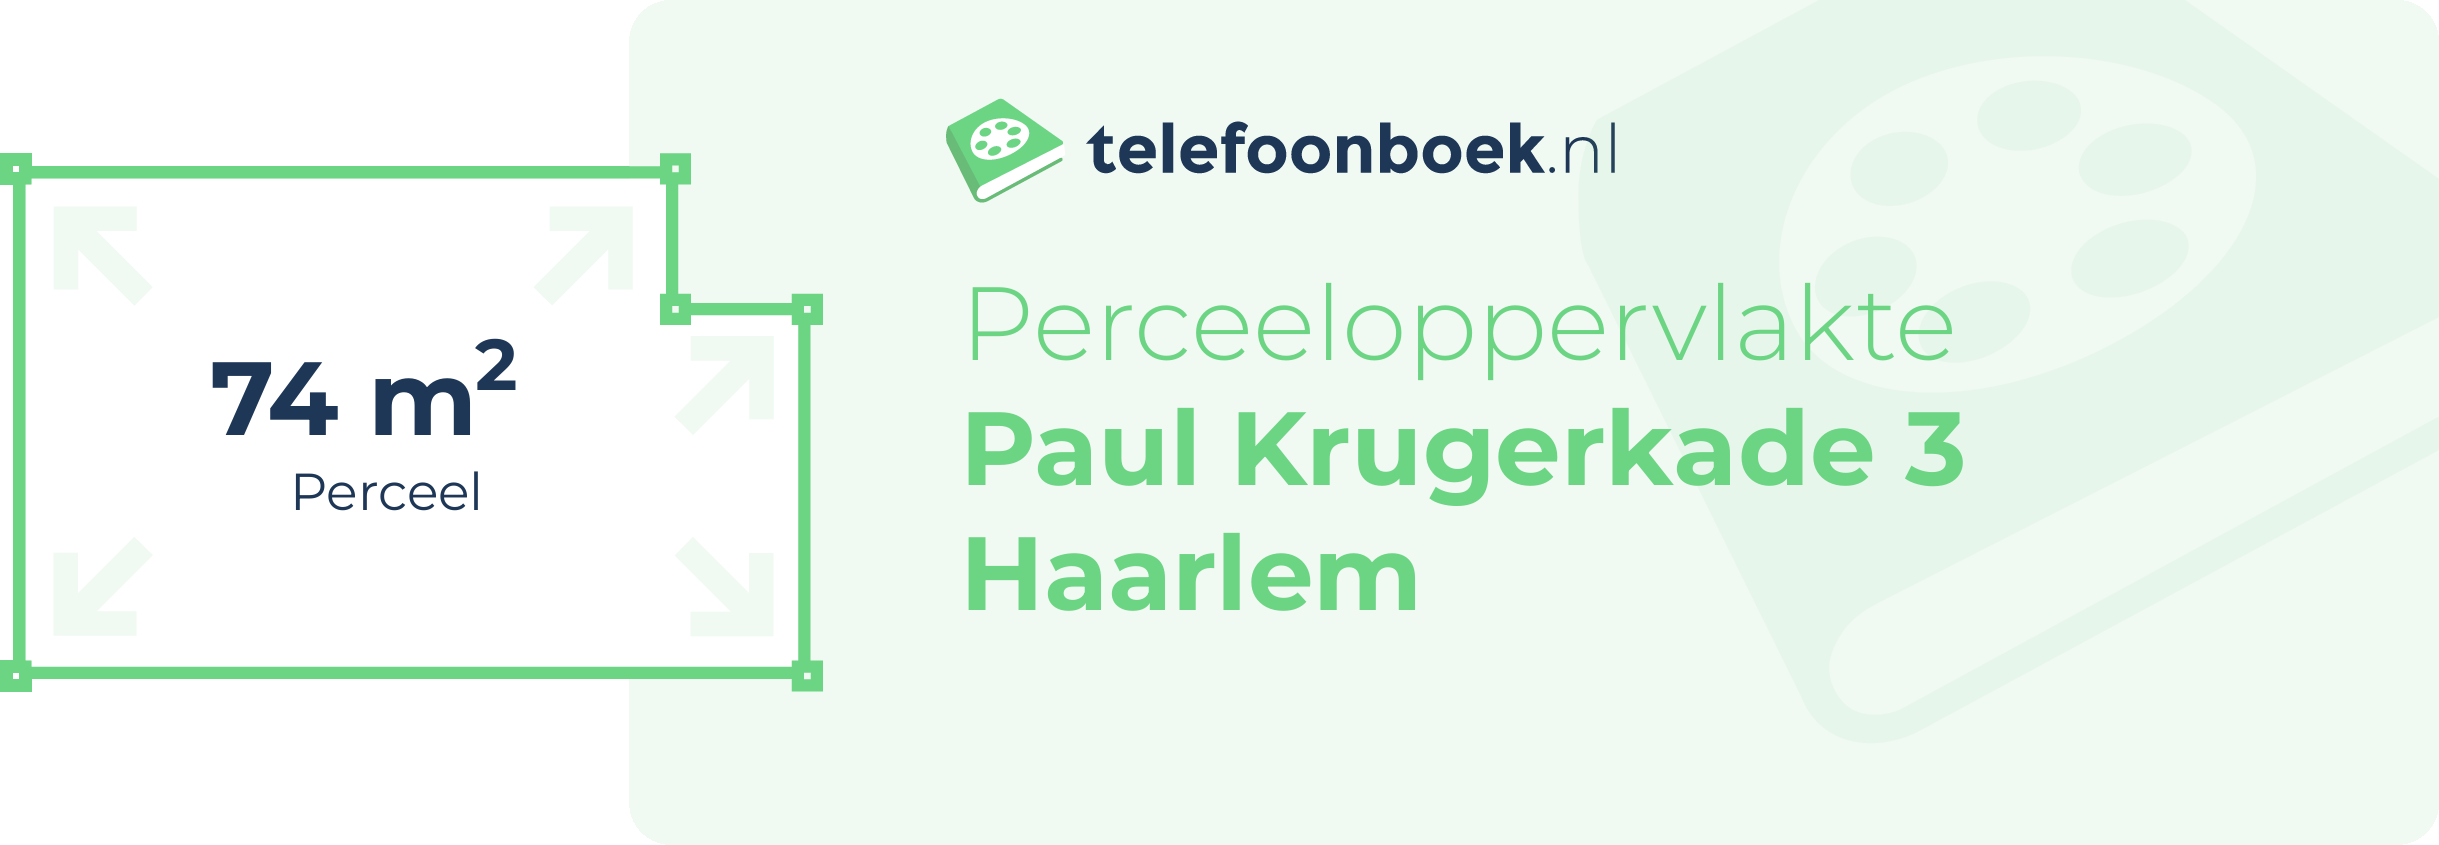 Perceeloppervlakte Paul Krugerkade 3 Haarlem